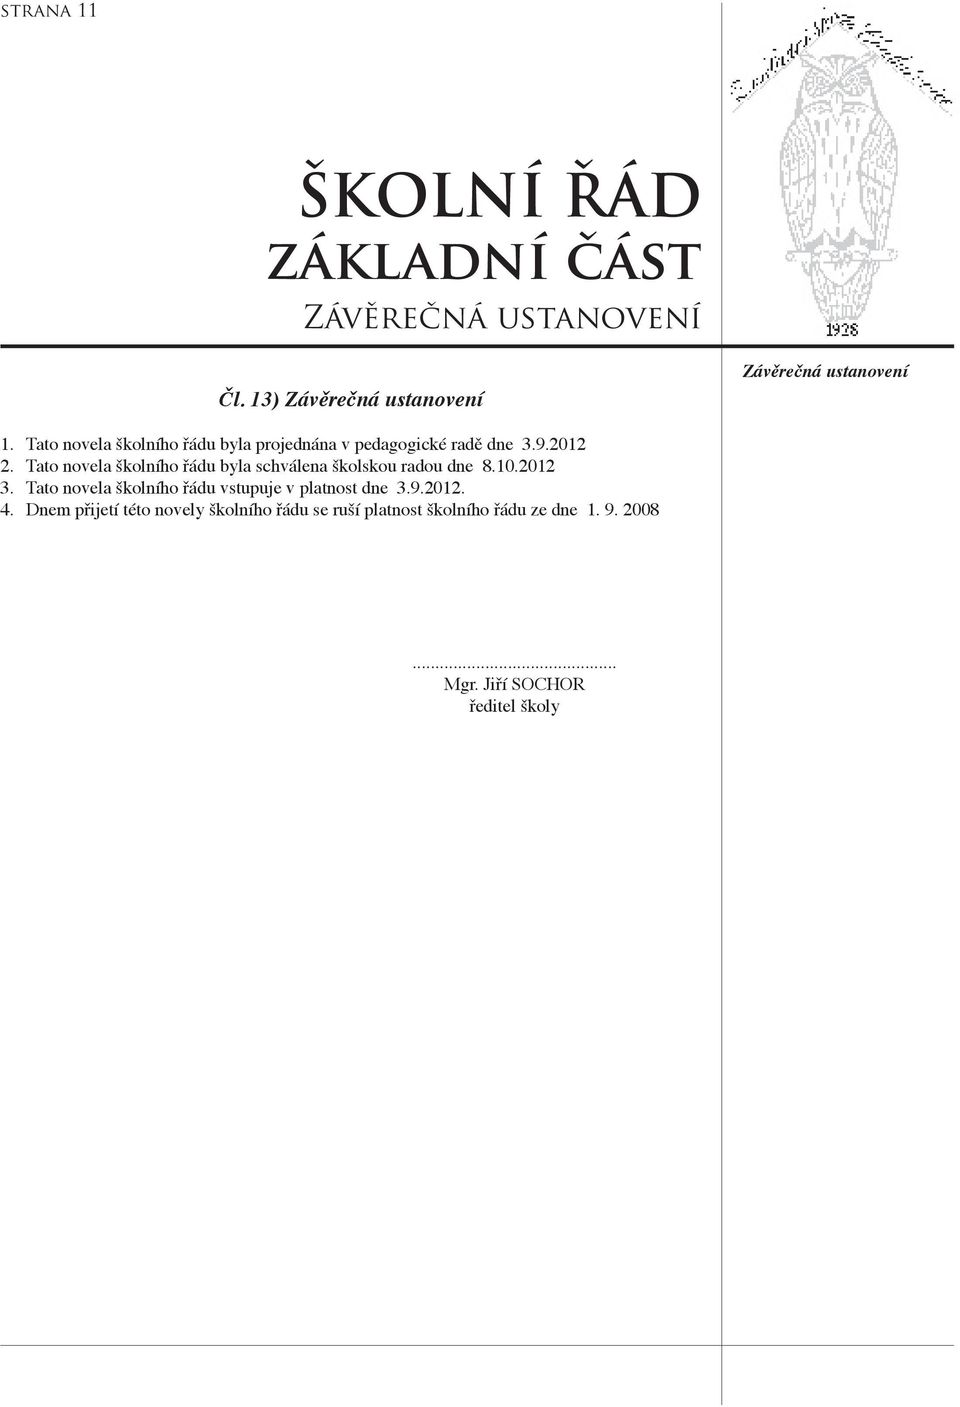 Tato novela školního řádu byla schválena školskou radou dne 8.10.2012 3.